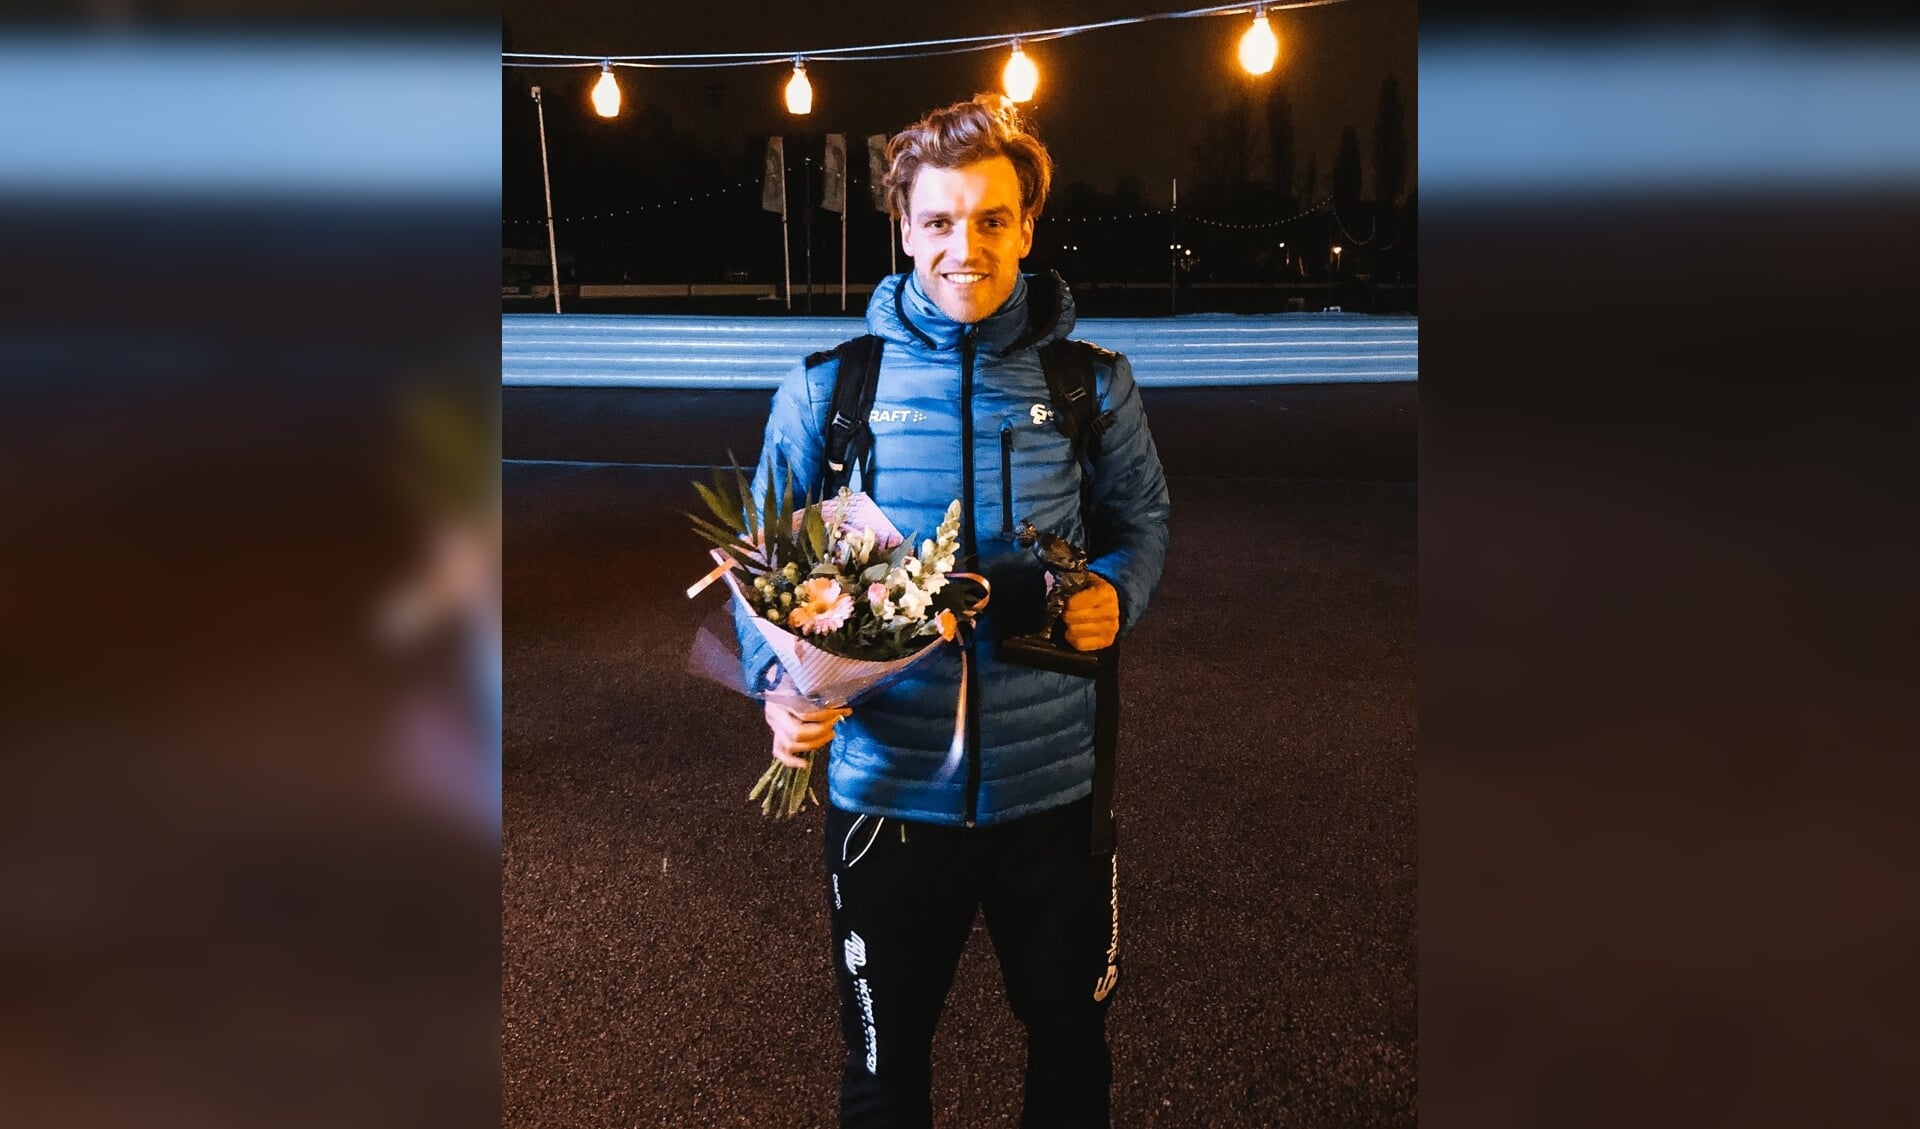 • Aron Romeijn nationaal kampioen pure sprint.